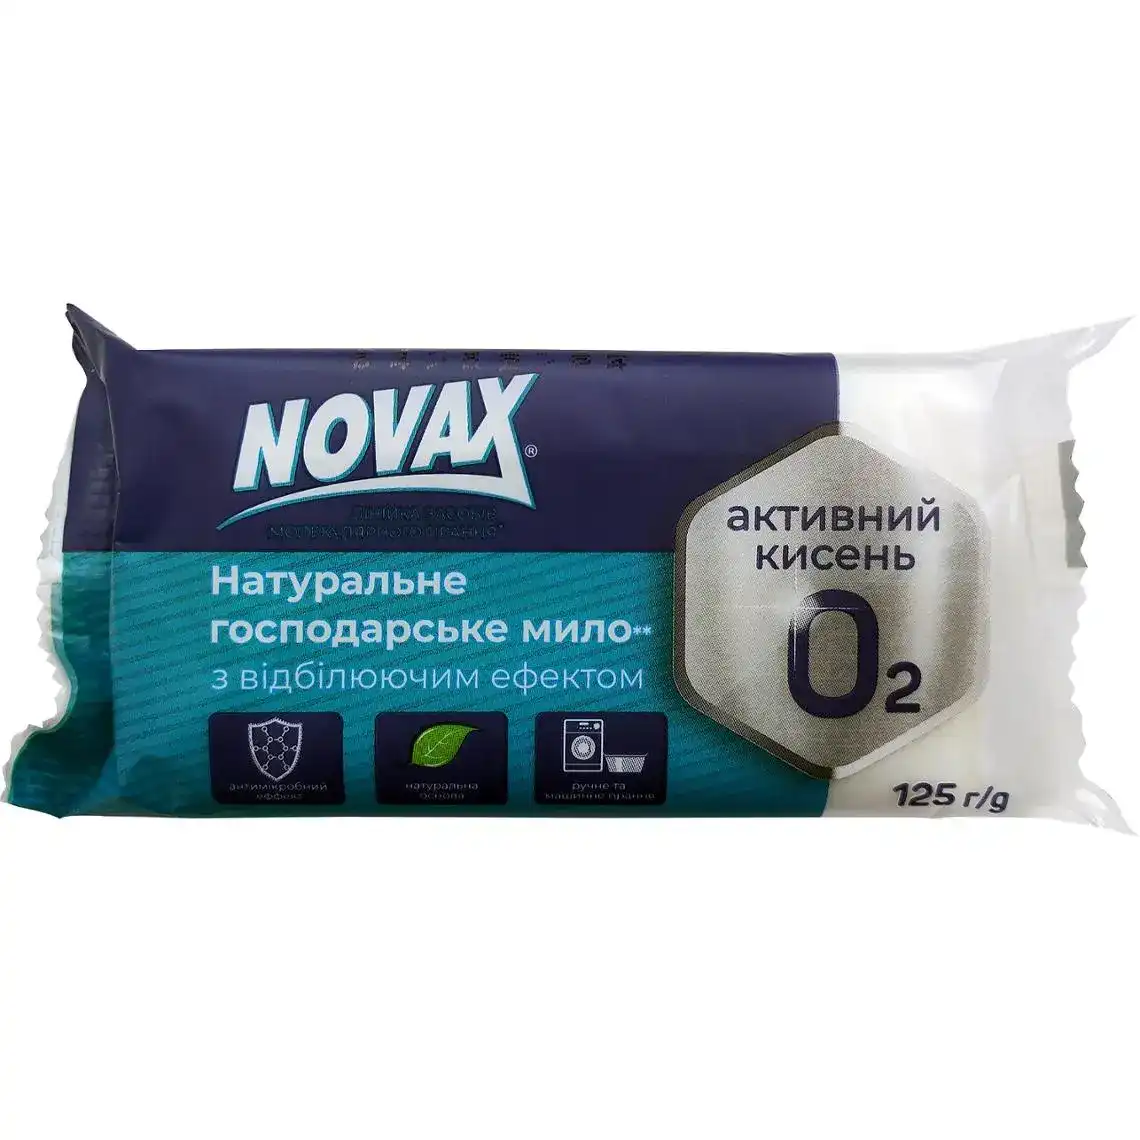 Мило господарське Novax для прання з відбілюючим ефектом 125 г